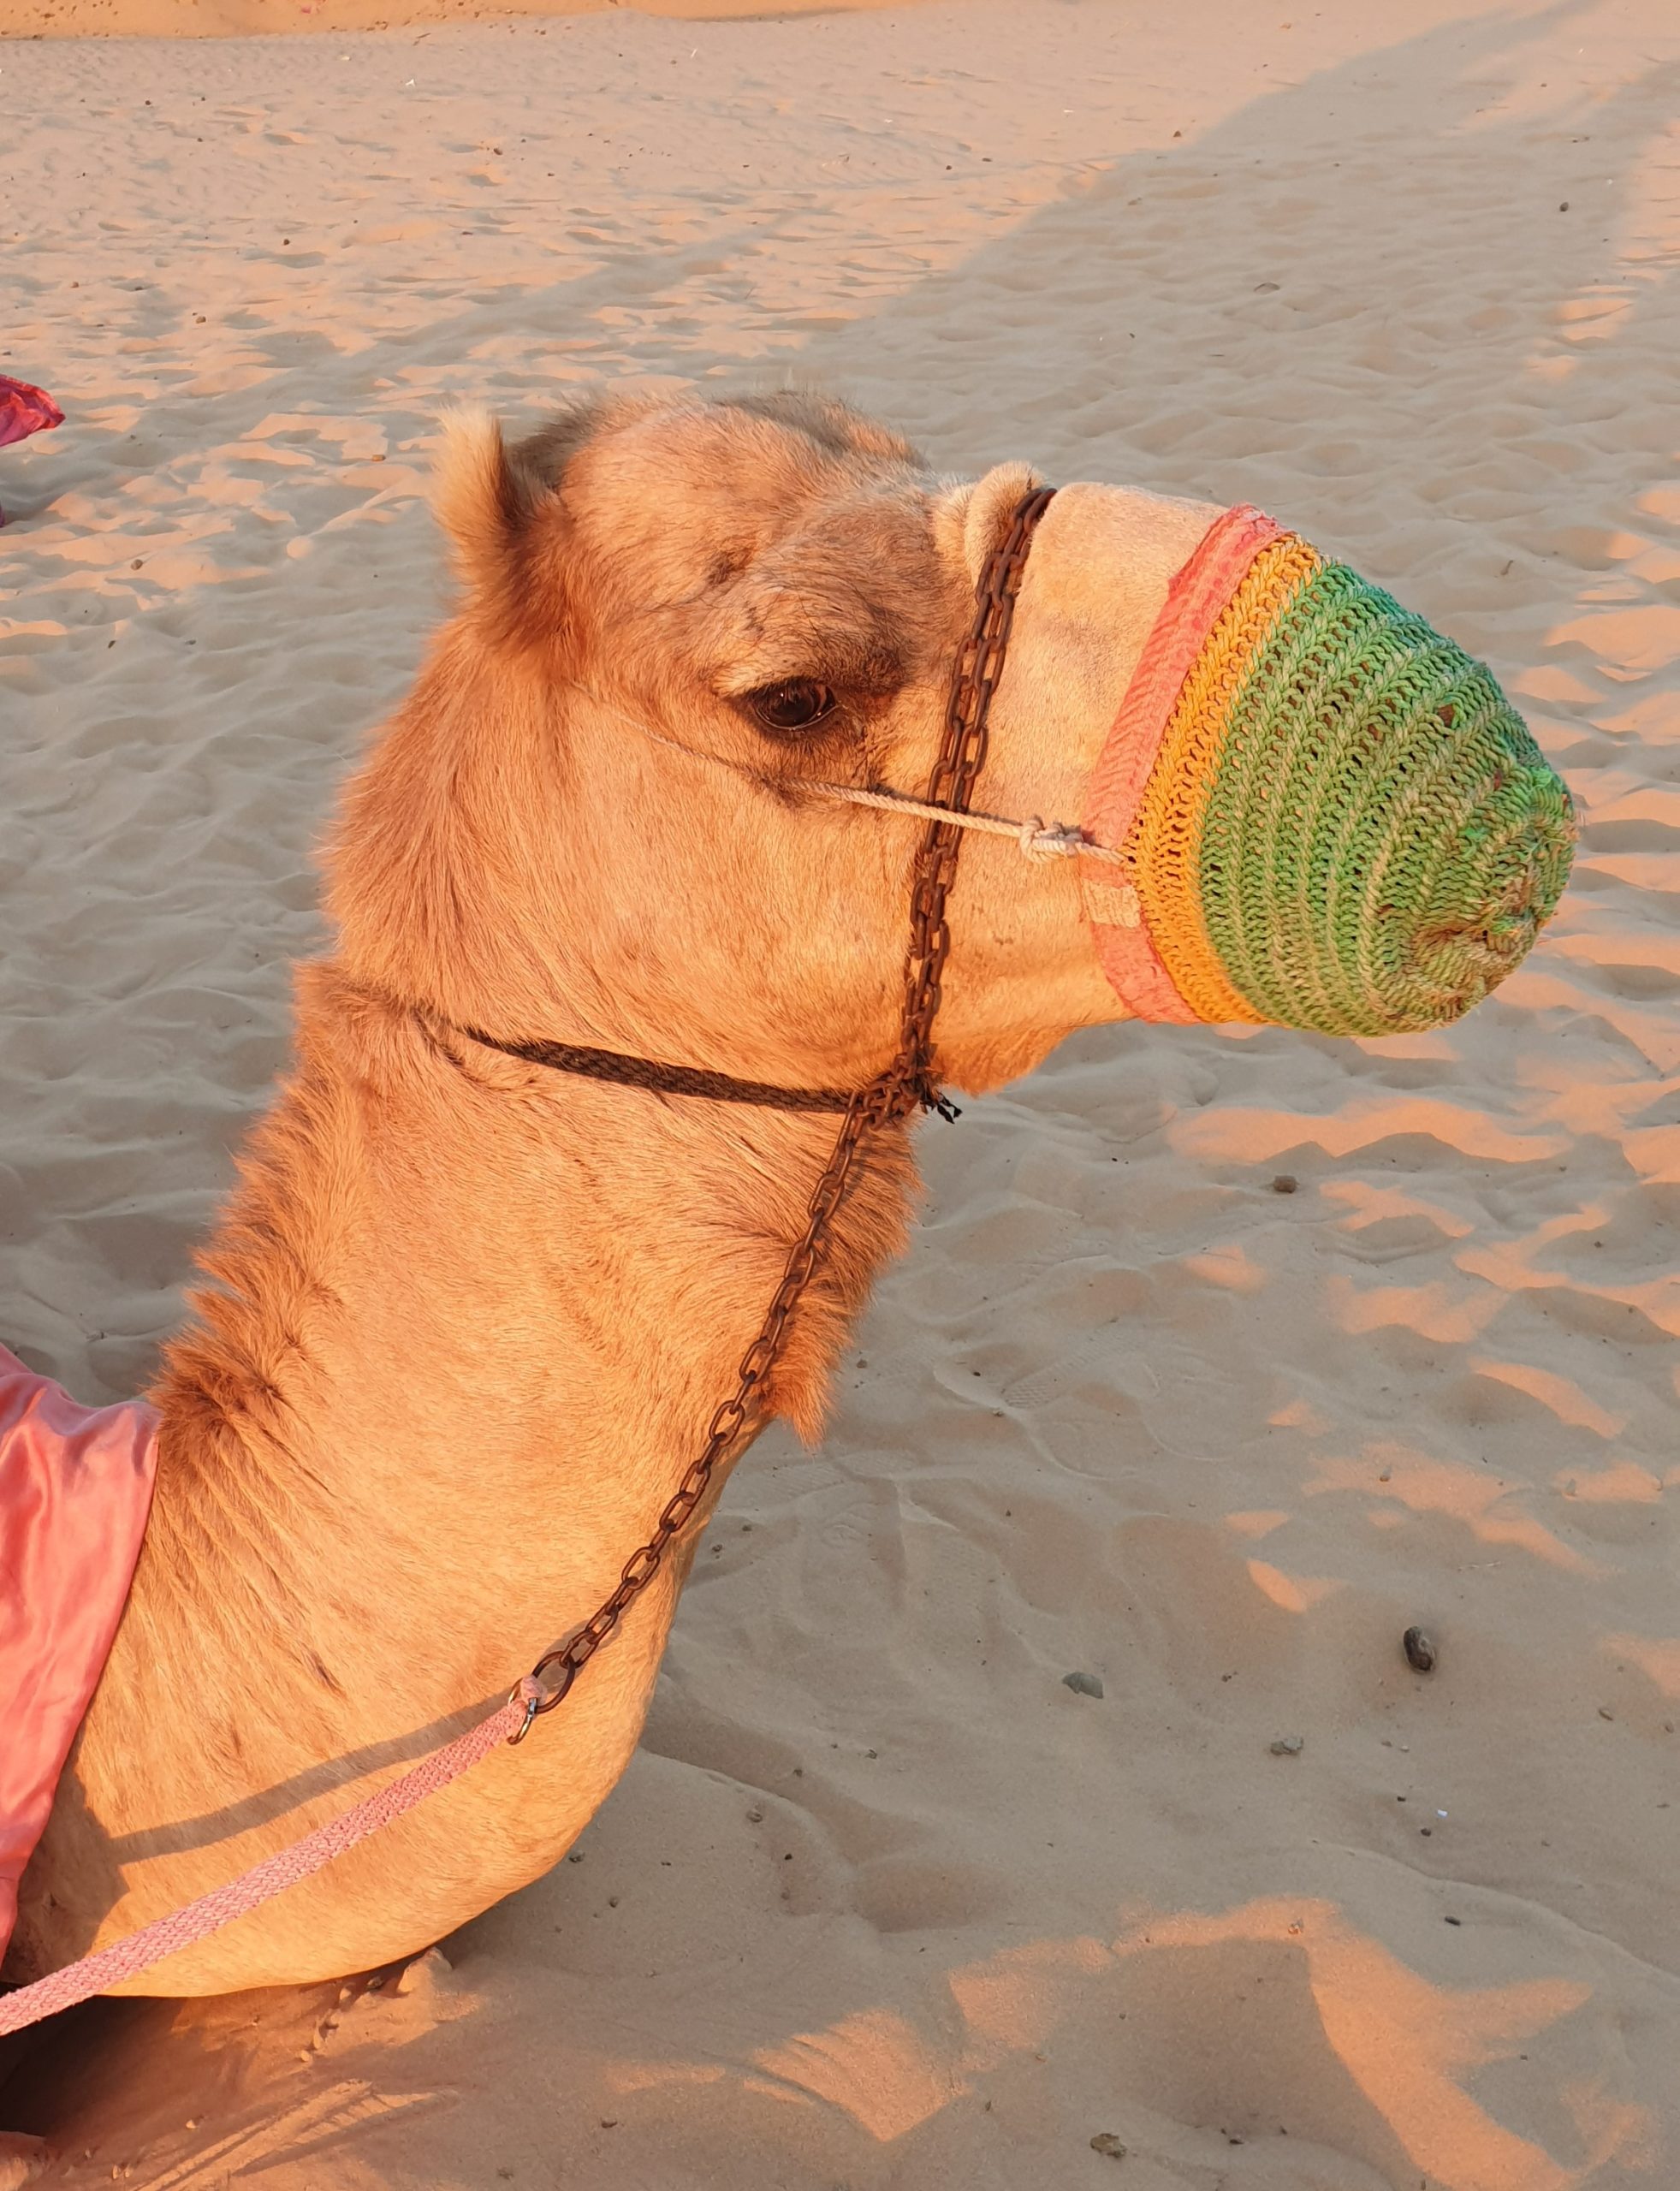 A camel in Abu Dhabi.